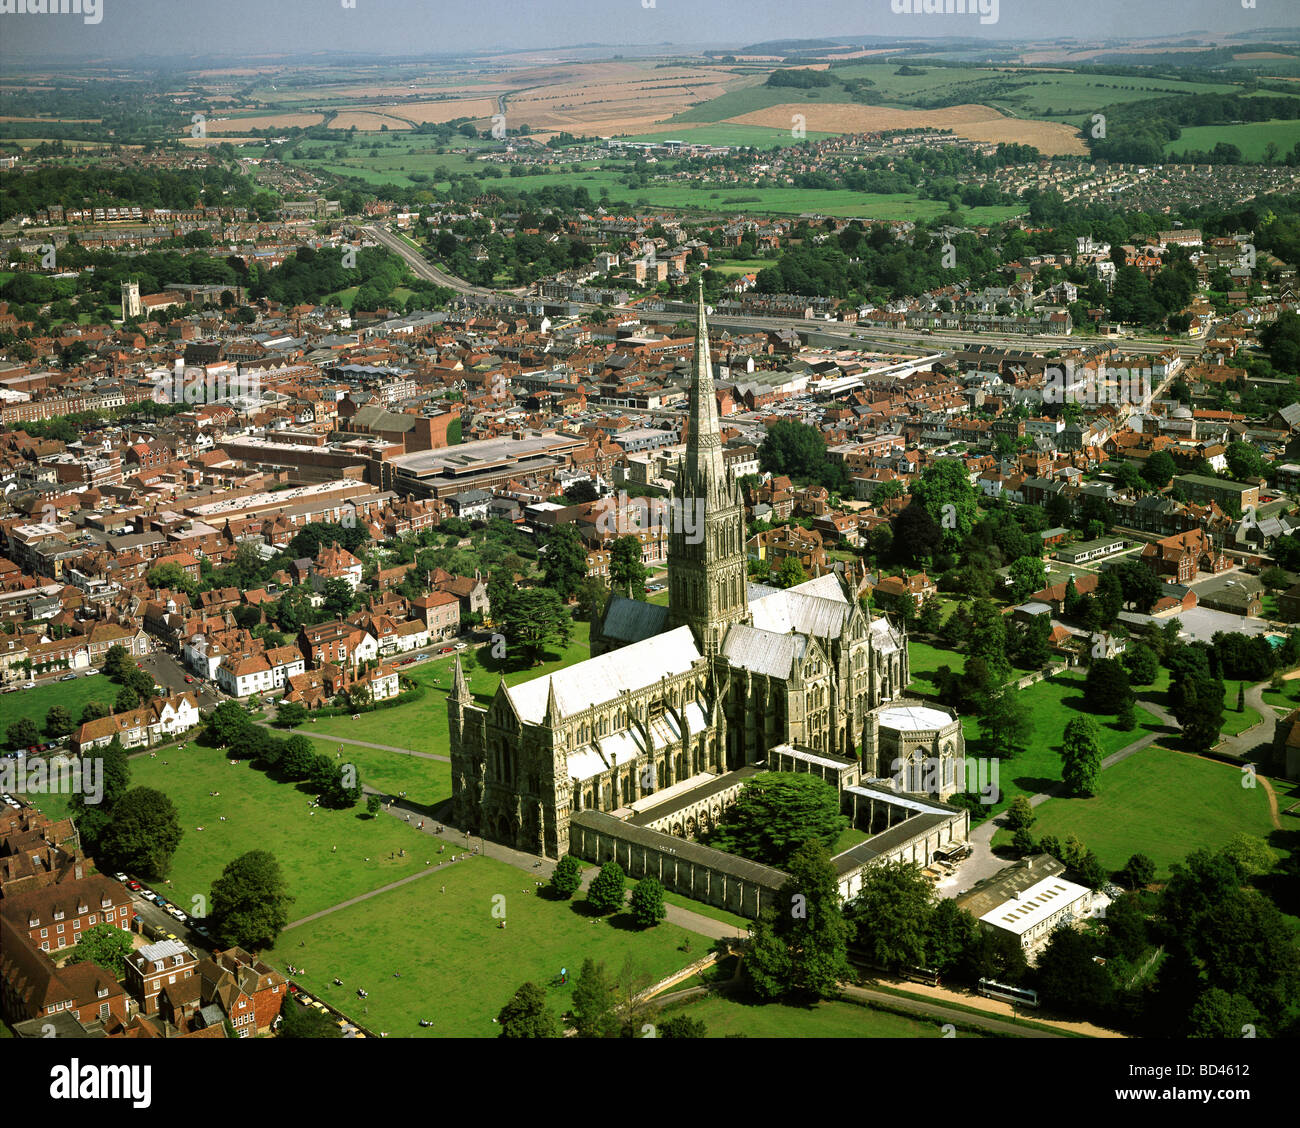 GB - WILTSHIRE: Cattedrale di Salisbury dall'aria Foto Stock